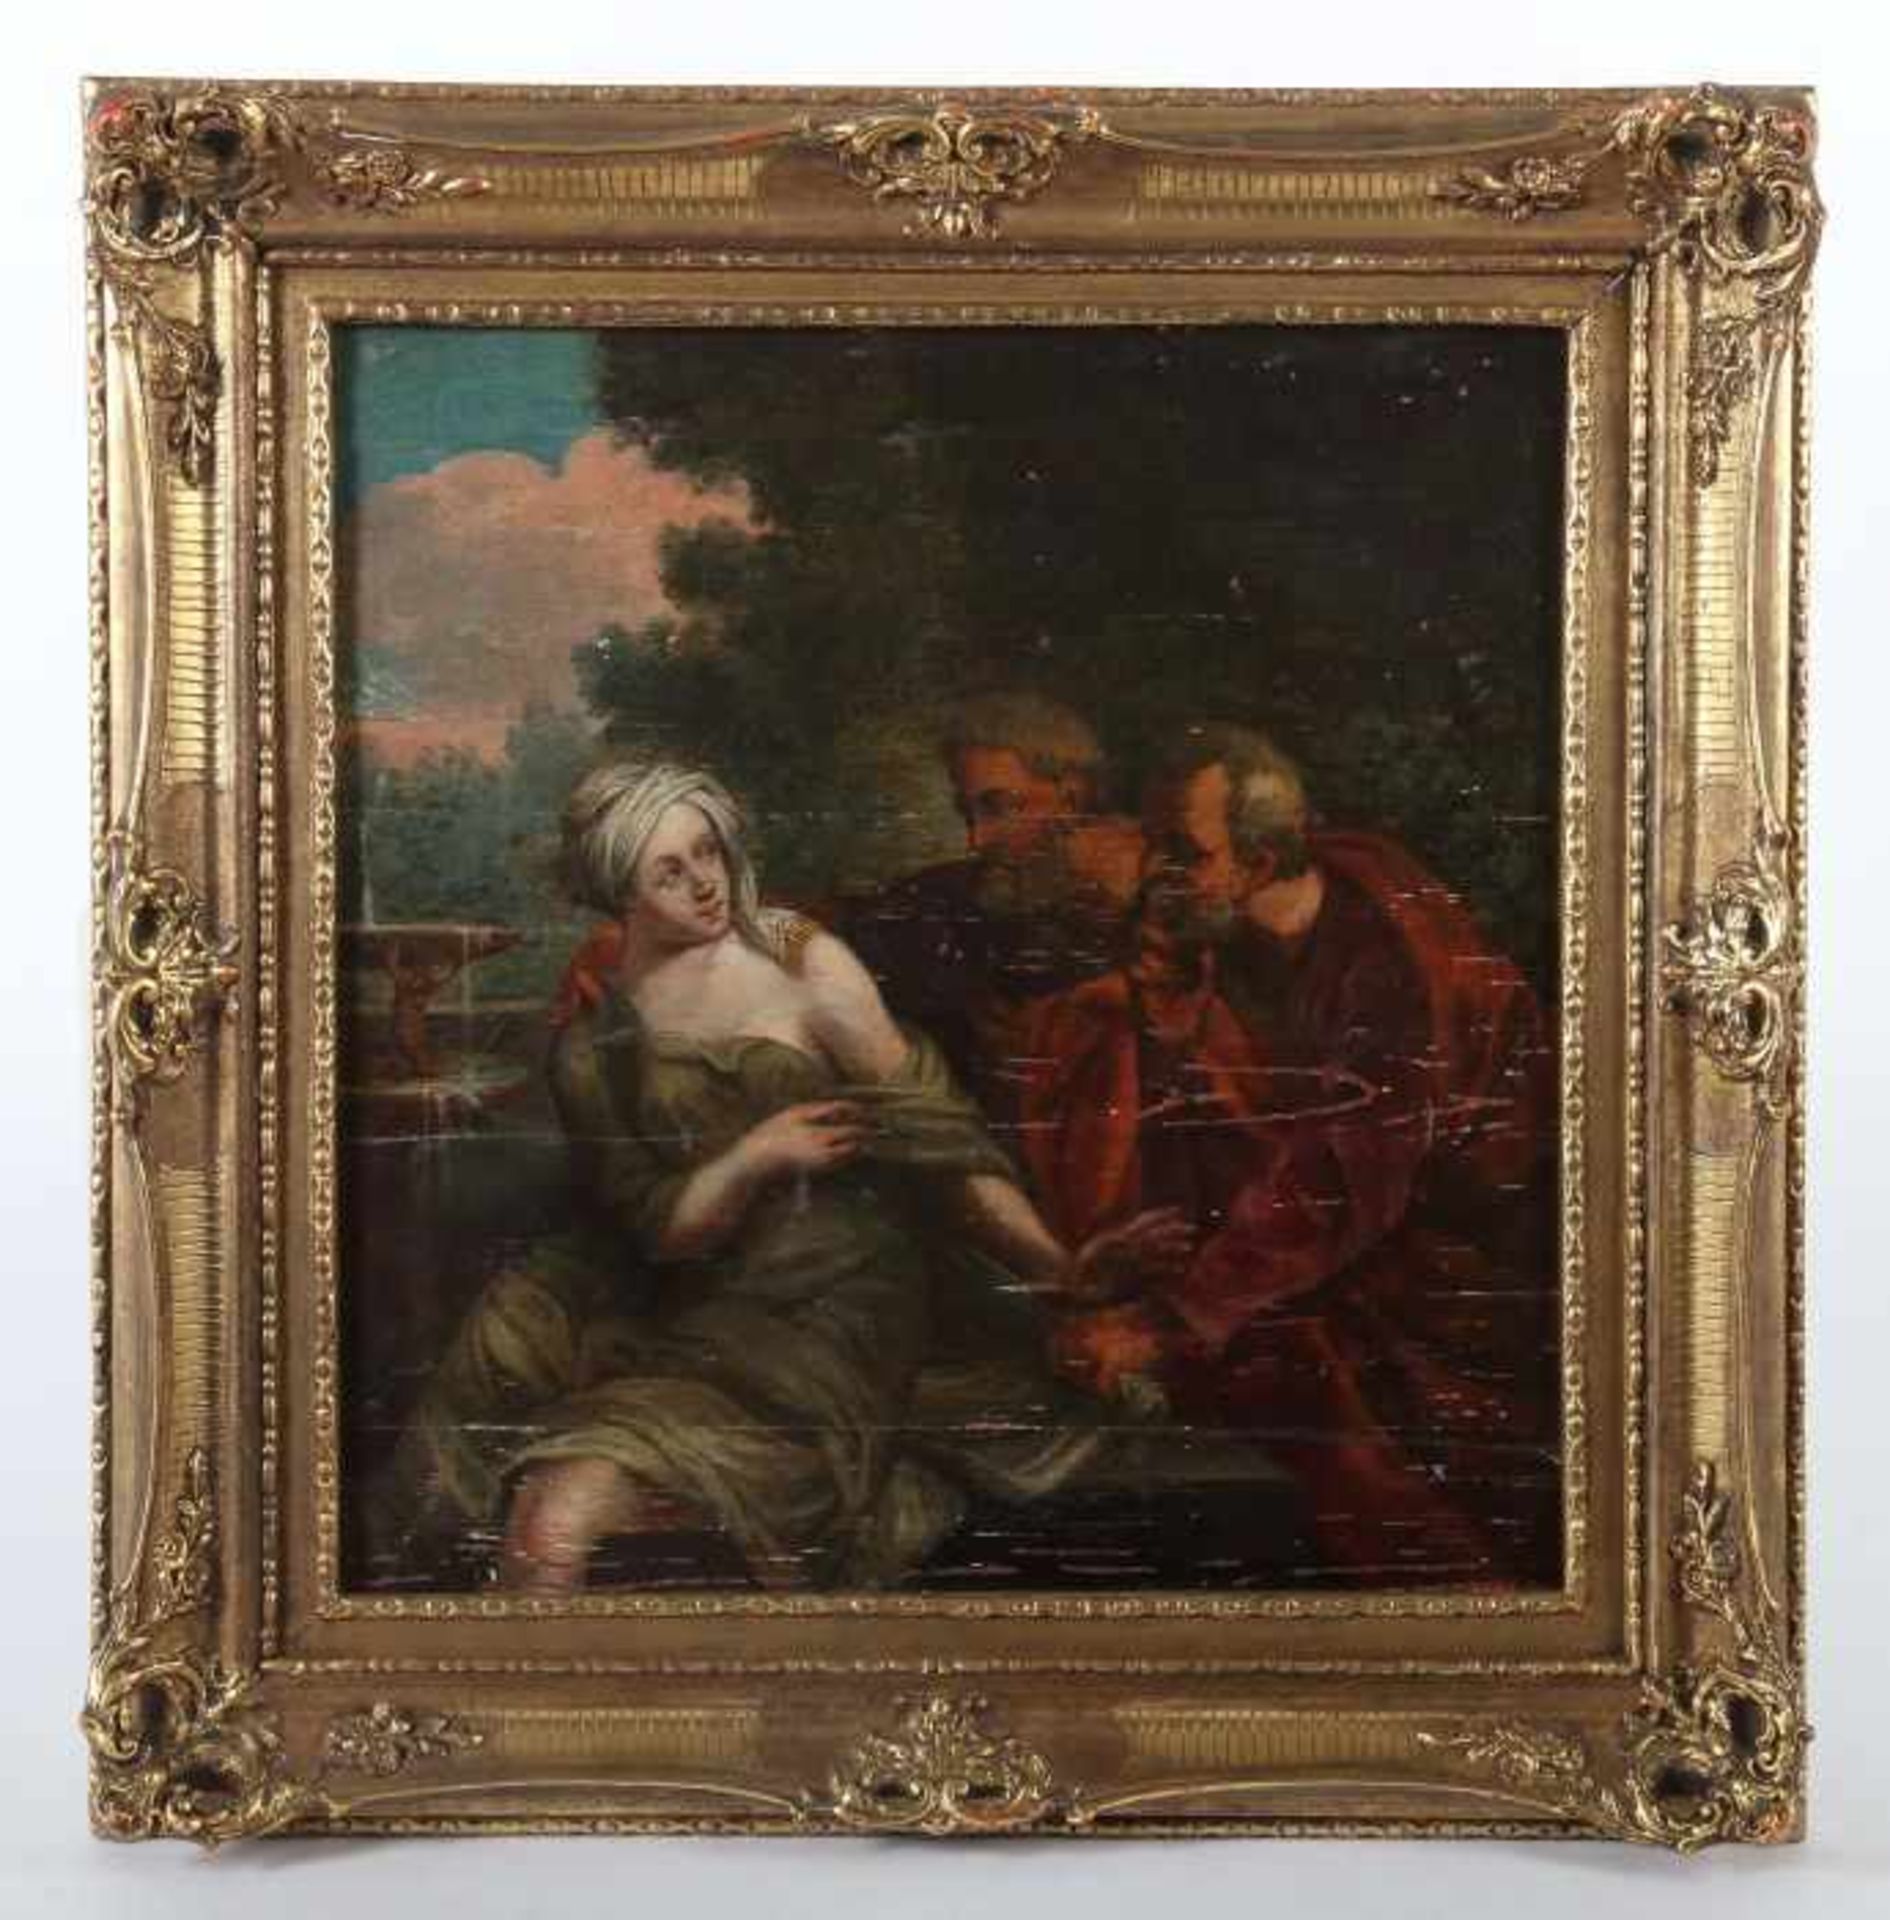 Maler des 18. Jh."Susanna und die Ältesten", die beiden Ältesten Susanne beim Bade auflauernd, - Image 2 of 4